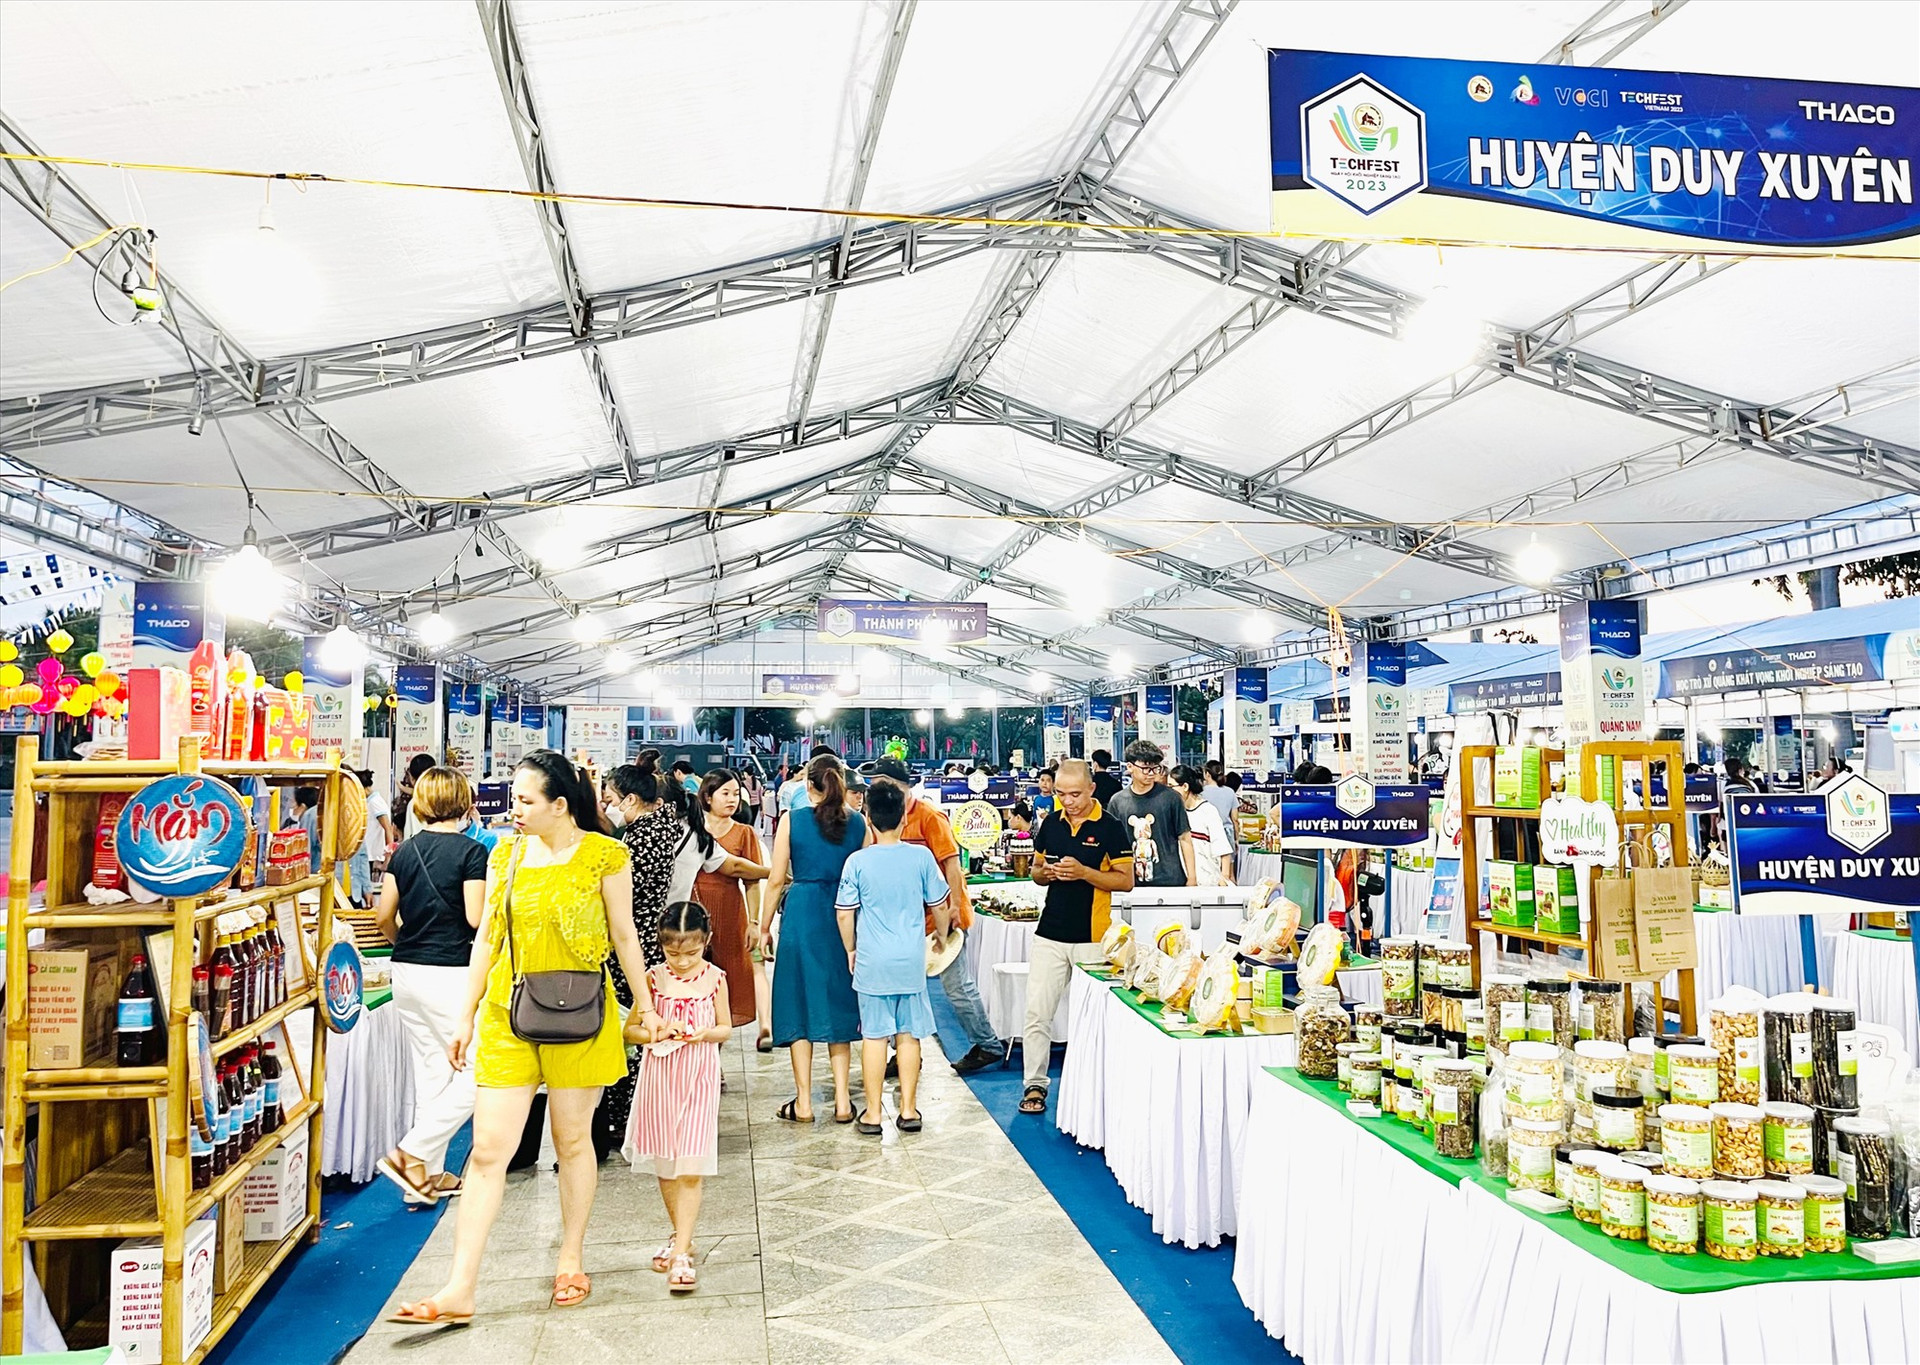 Chính quyền huyện Duy Xuyên luôn tạo điều kiện cho chủ thể OCOP tham gia các hội chợ quảng bá sản phẩm. Ảnh: N.P